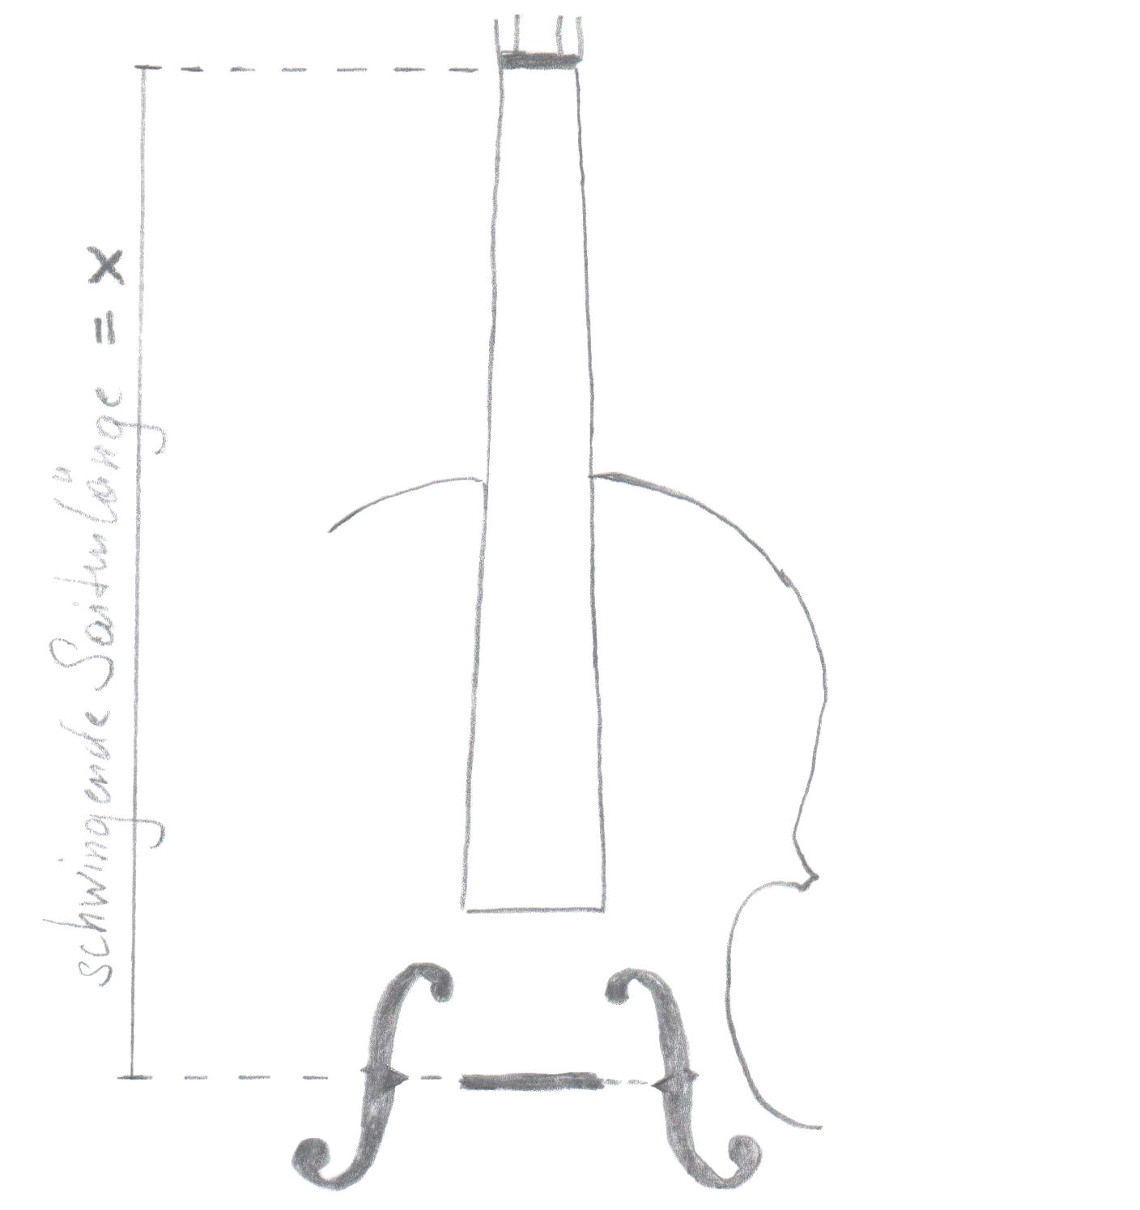 Abbildung: Die Länge x der schwingenden Saite zwischen Obersattel und Steg (Spielmensur)